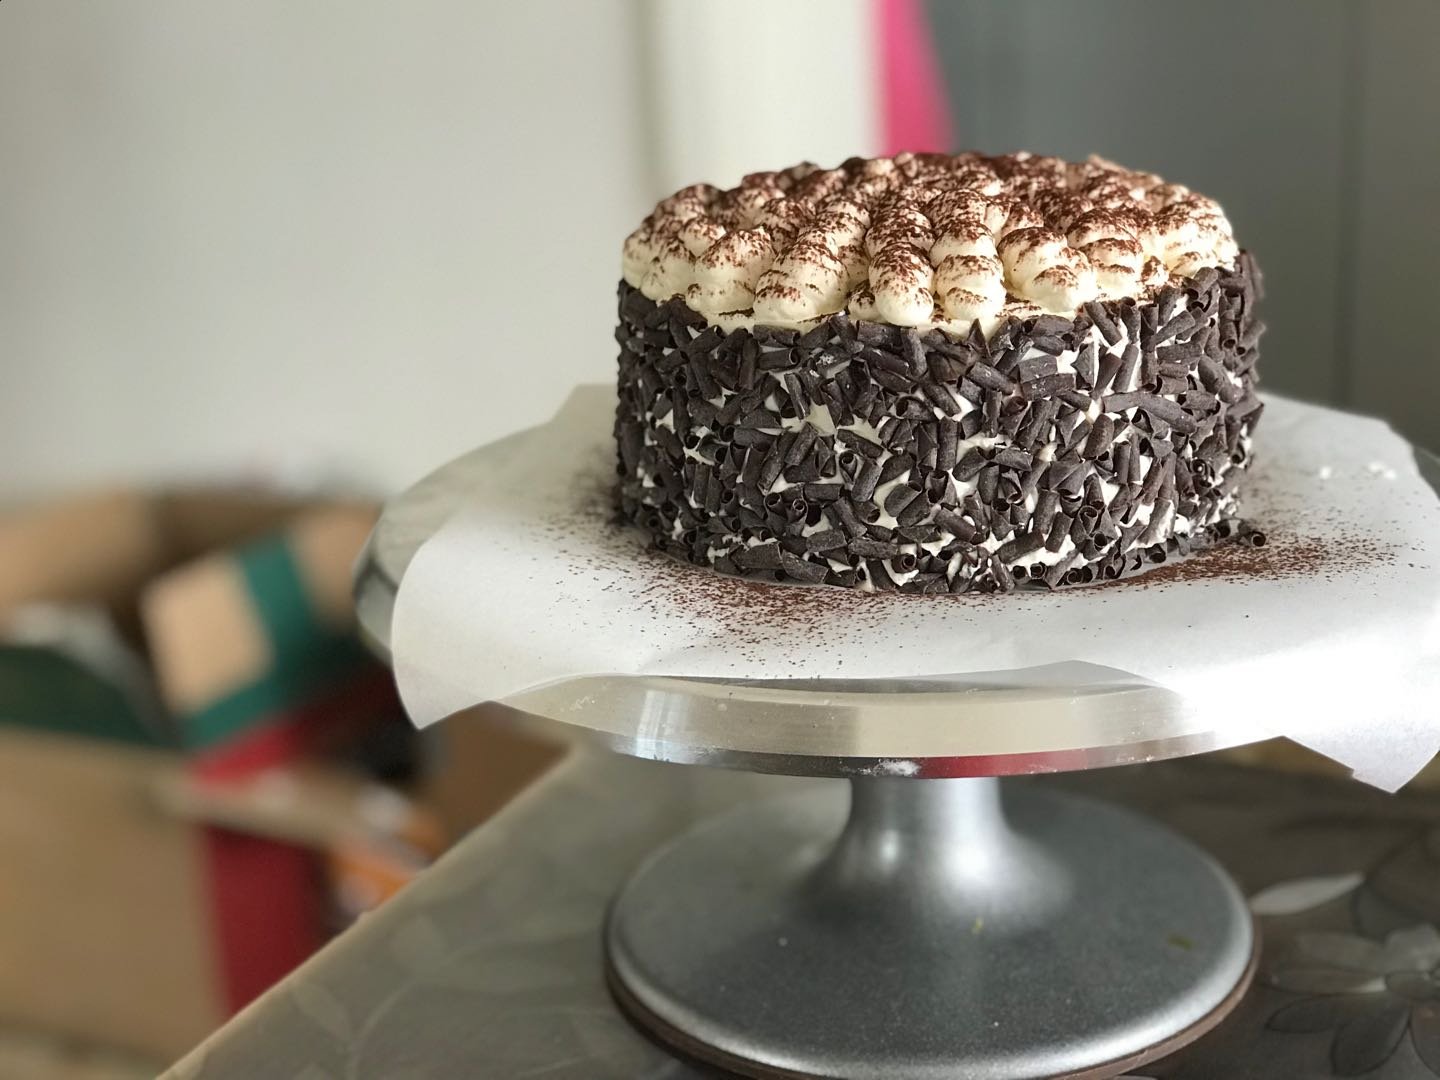 进阶版法式黑森林蛋糕 & 巧克力插件